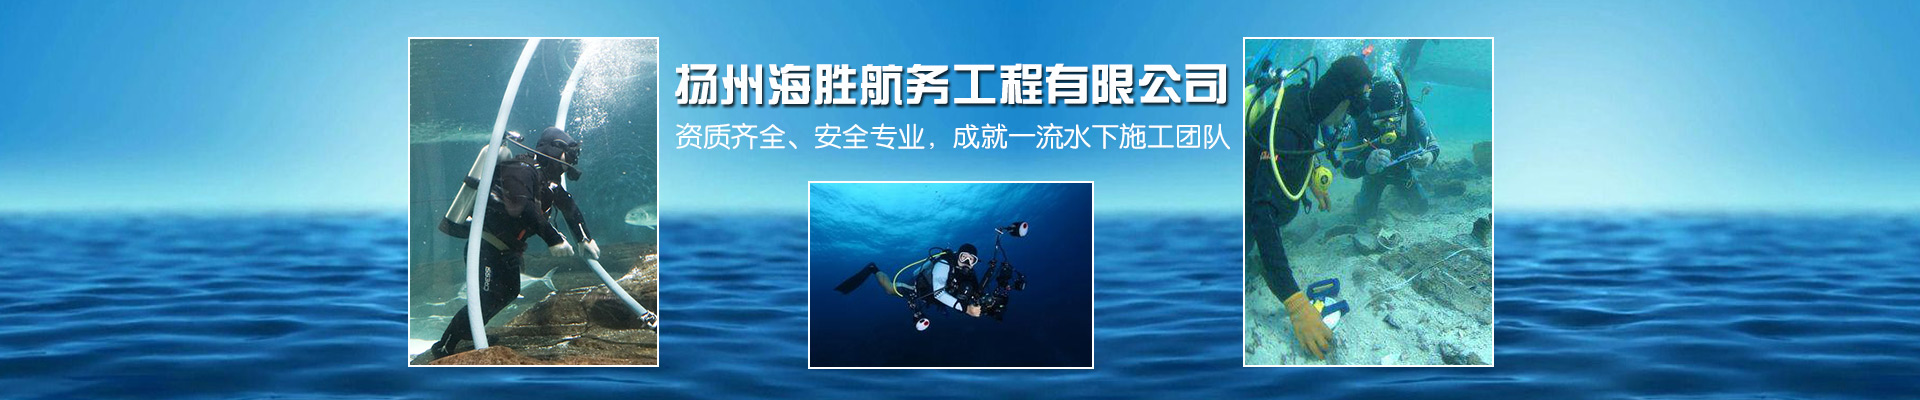 葫芦岛潜水排污管道封堵施工